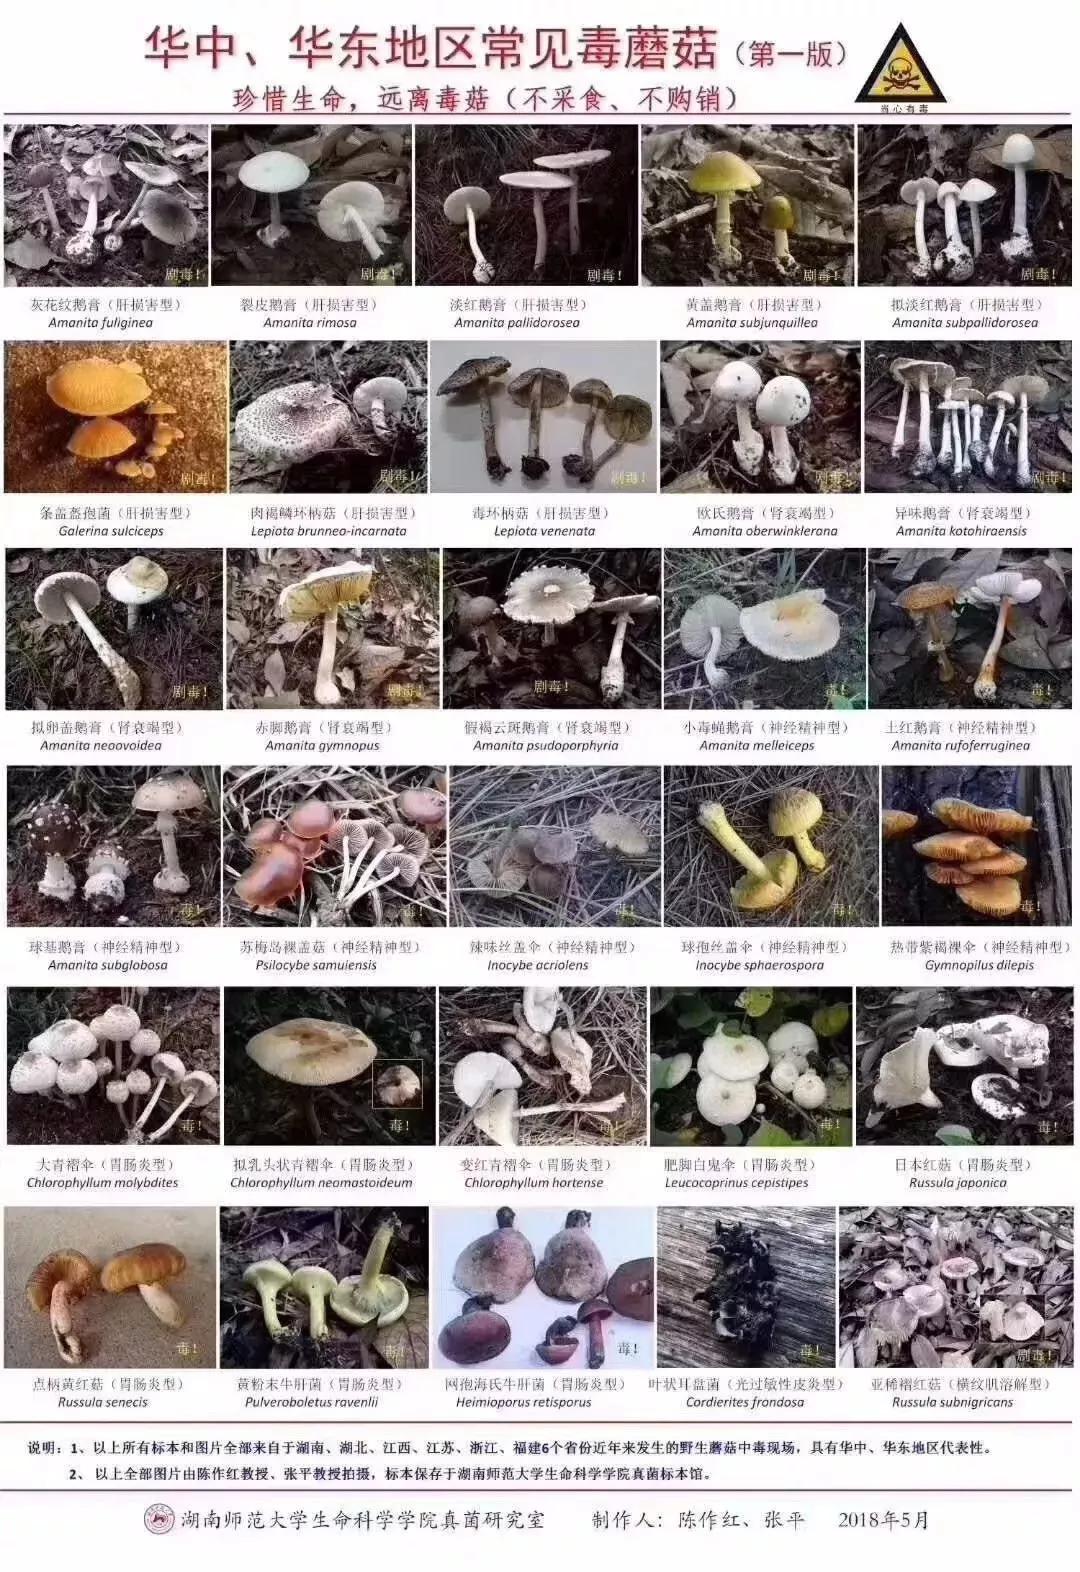 蘑菇种类 野生 有毒图片